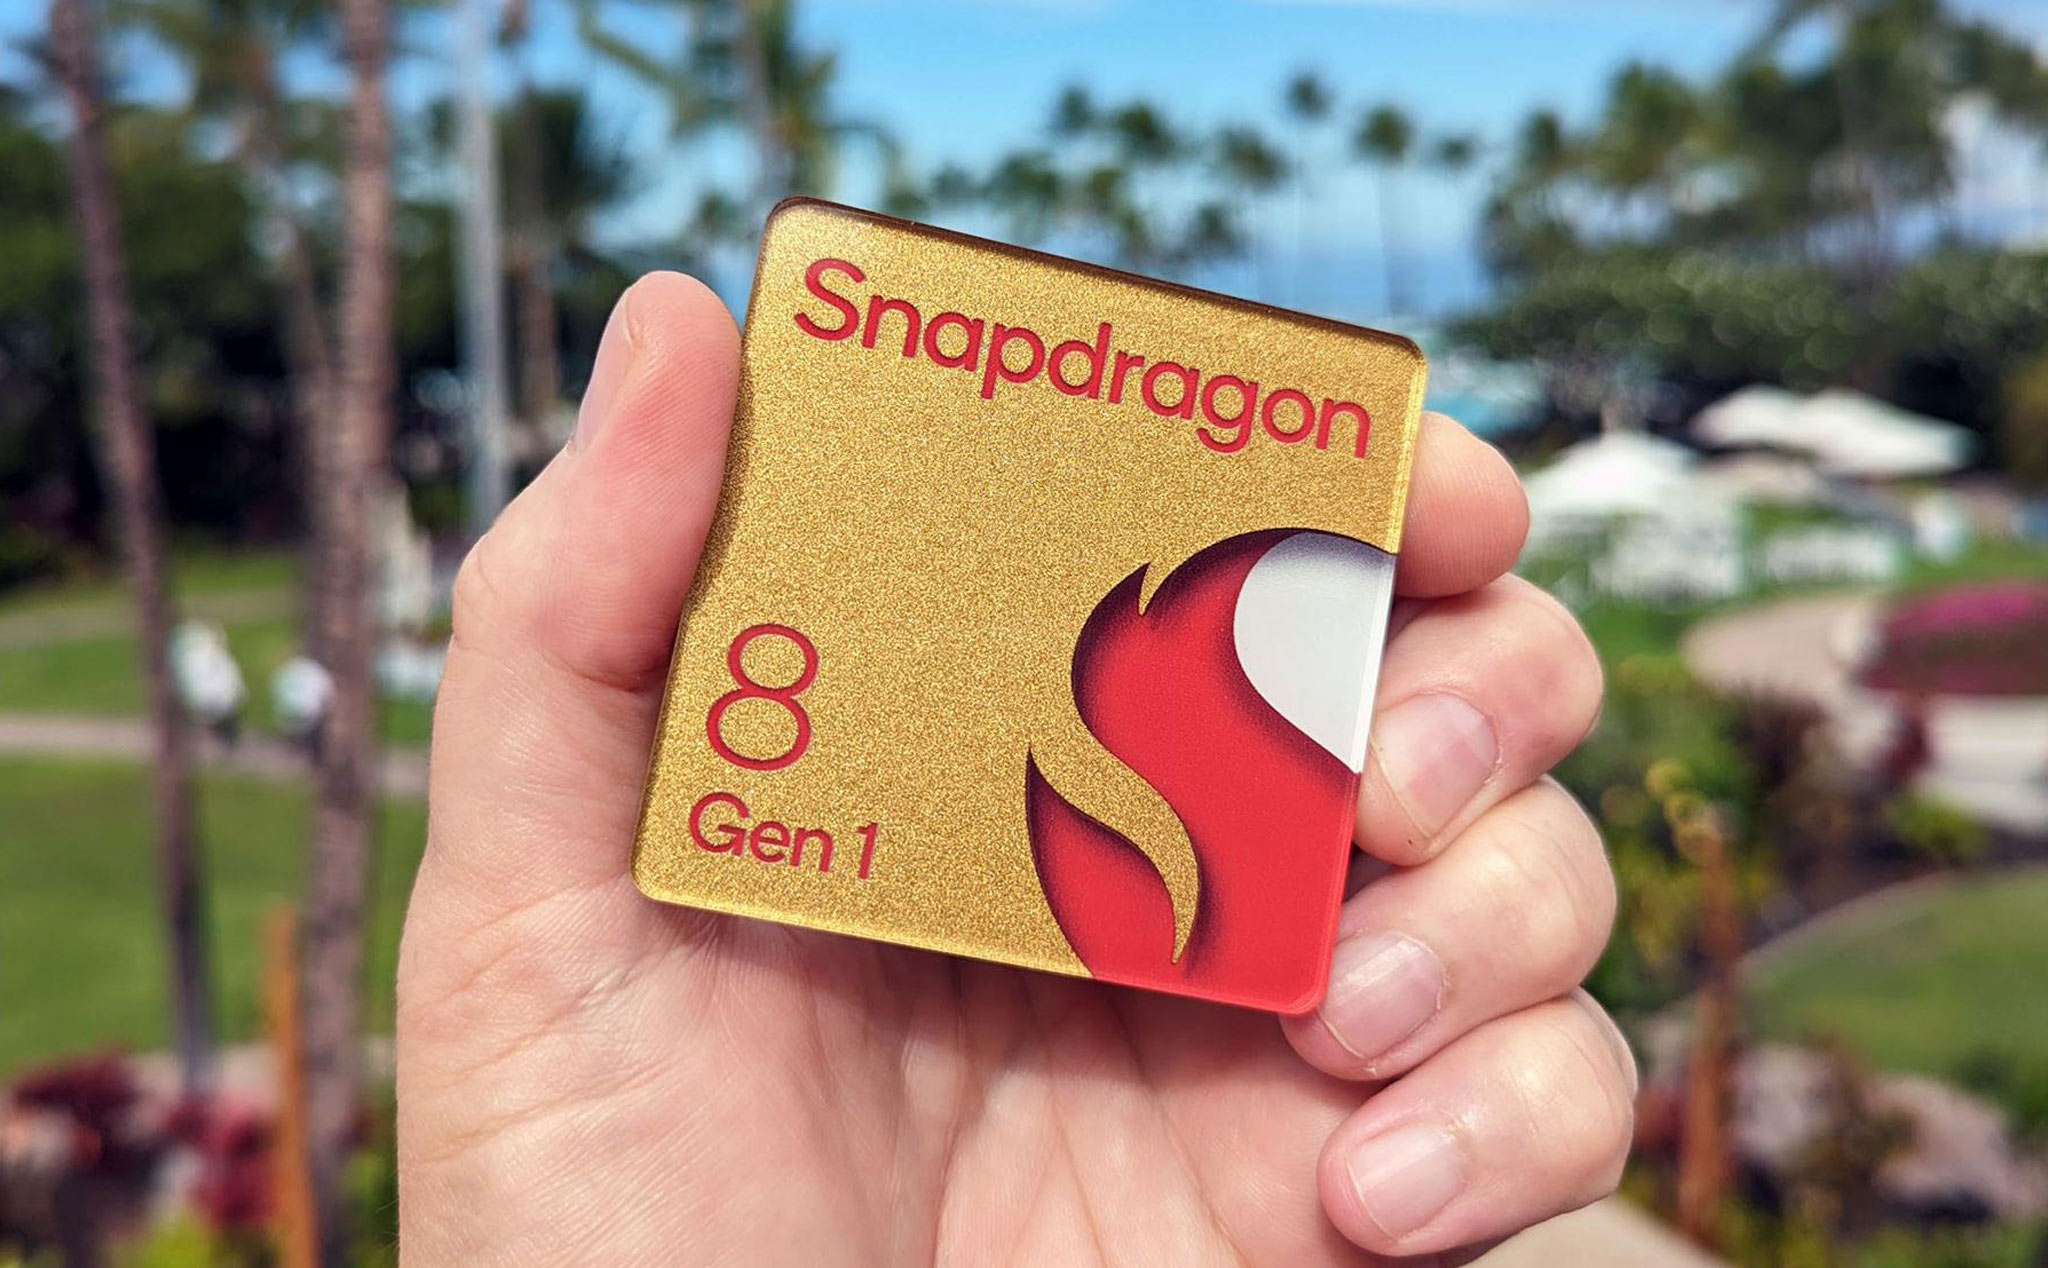 Lý do cho vấn đề nhiệt độ trên Snapdragon 8 Gen 1 được hé lộ?